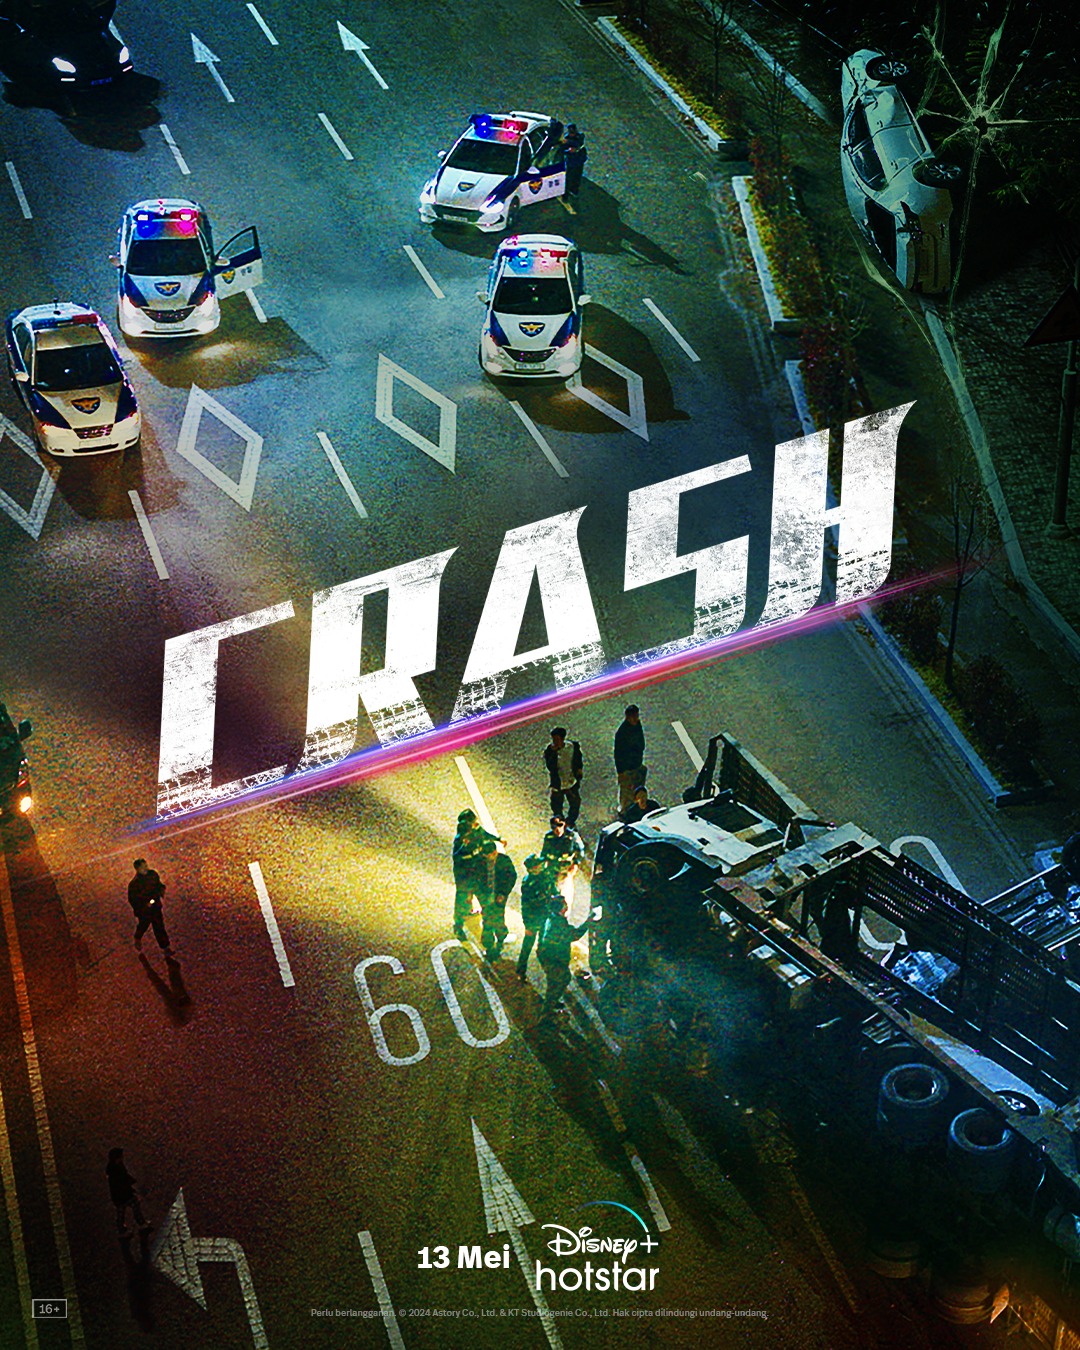 Kembalinya Seorang Jenius dalam Drama Crime Korea ‘Crash’, Tayang Bulan Depan